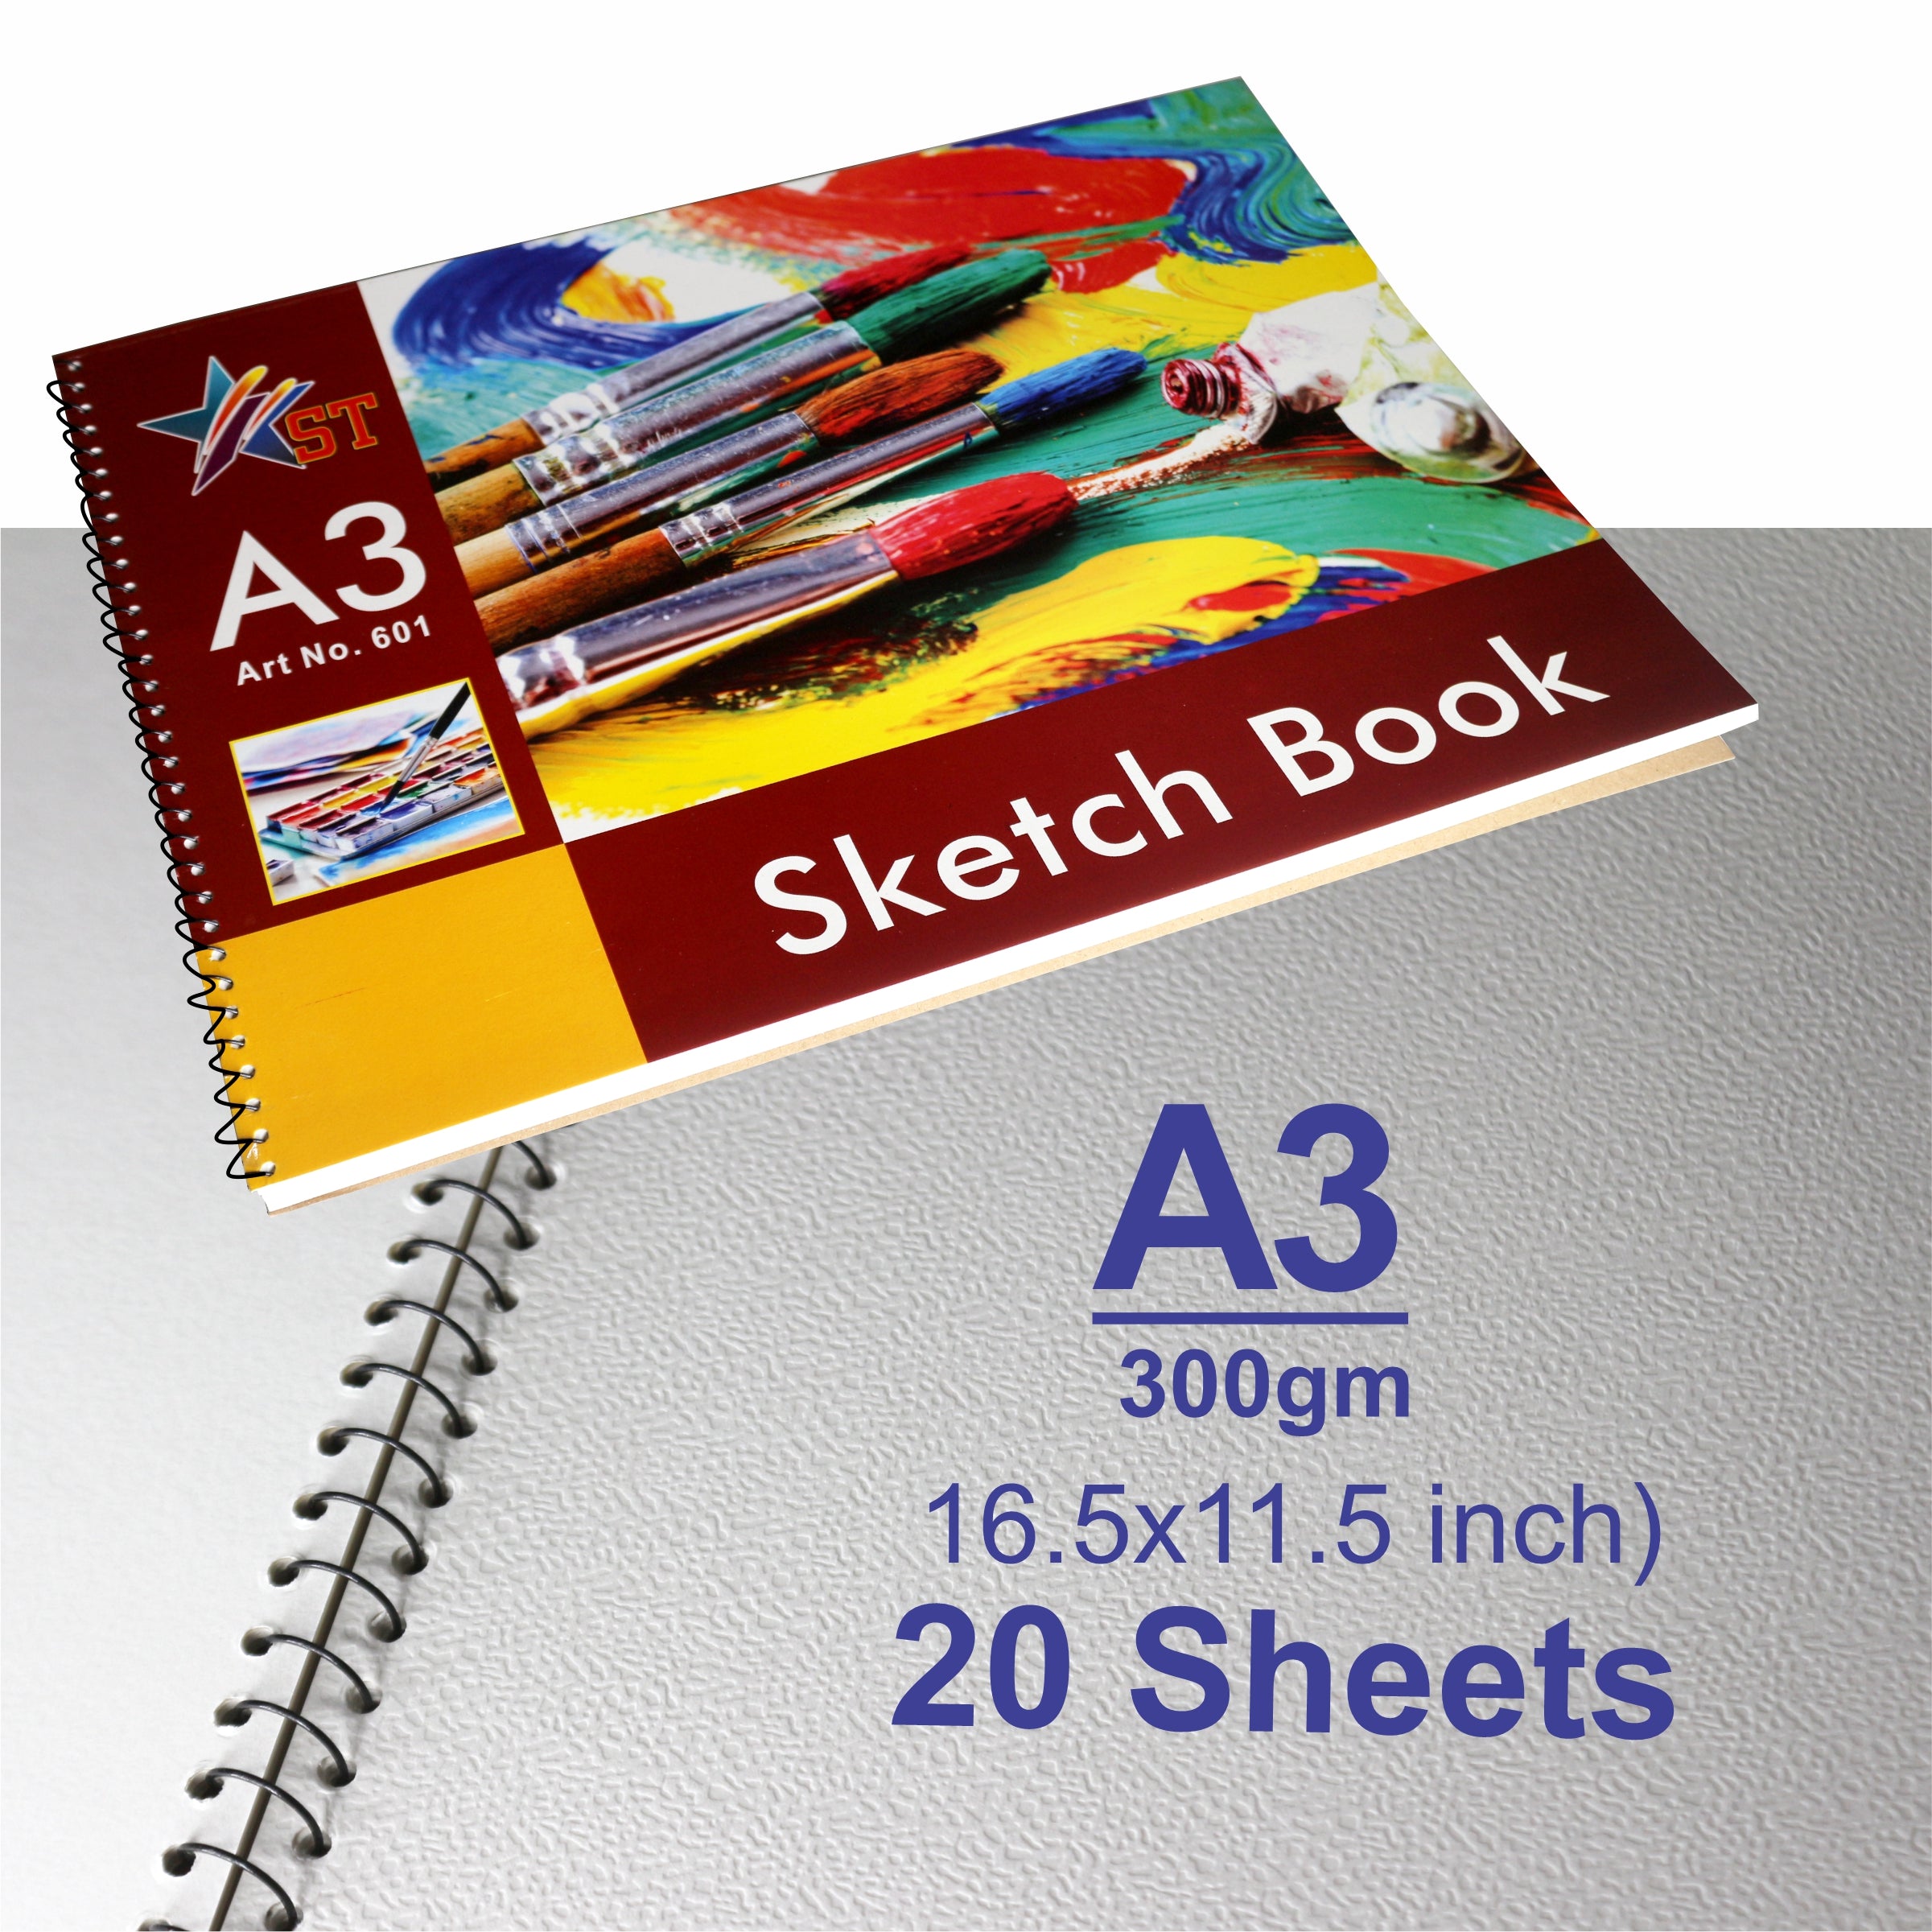 Sensa Sketchbook A3 20 Sheets  No.601